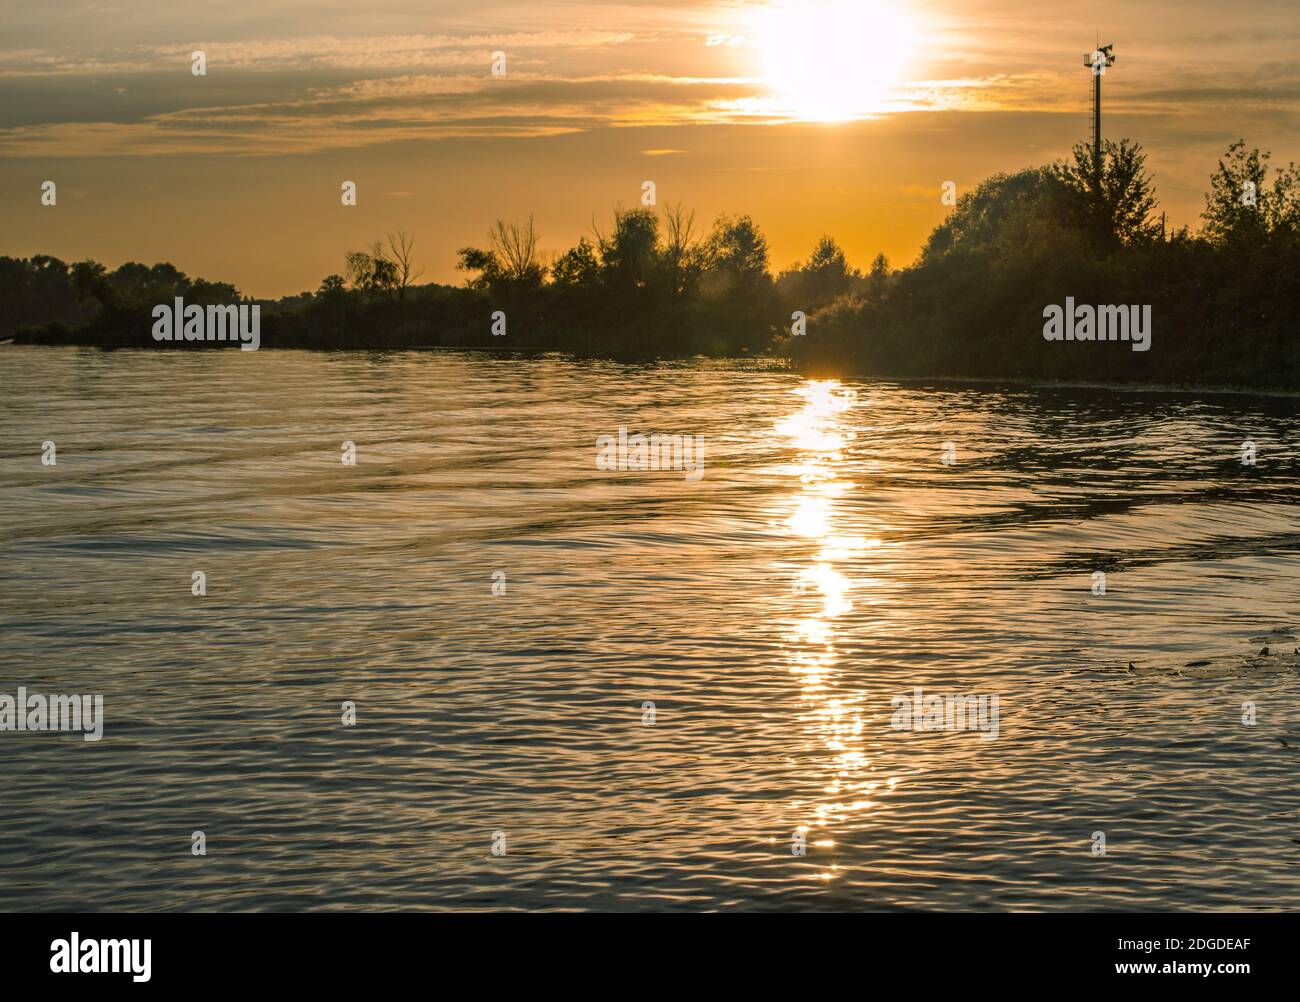 Sonnenuntergang Sonne Reflexion im Wasser, schöne Herbst Abendlandschaft Stockfoto